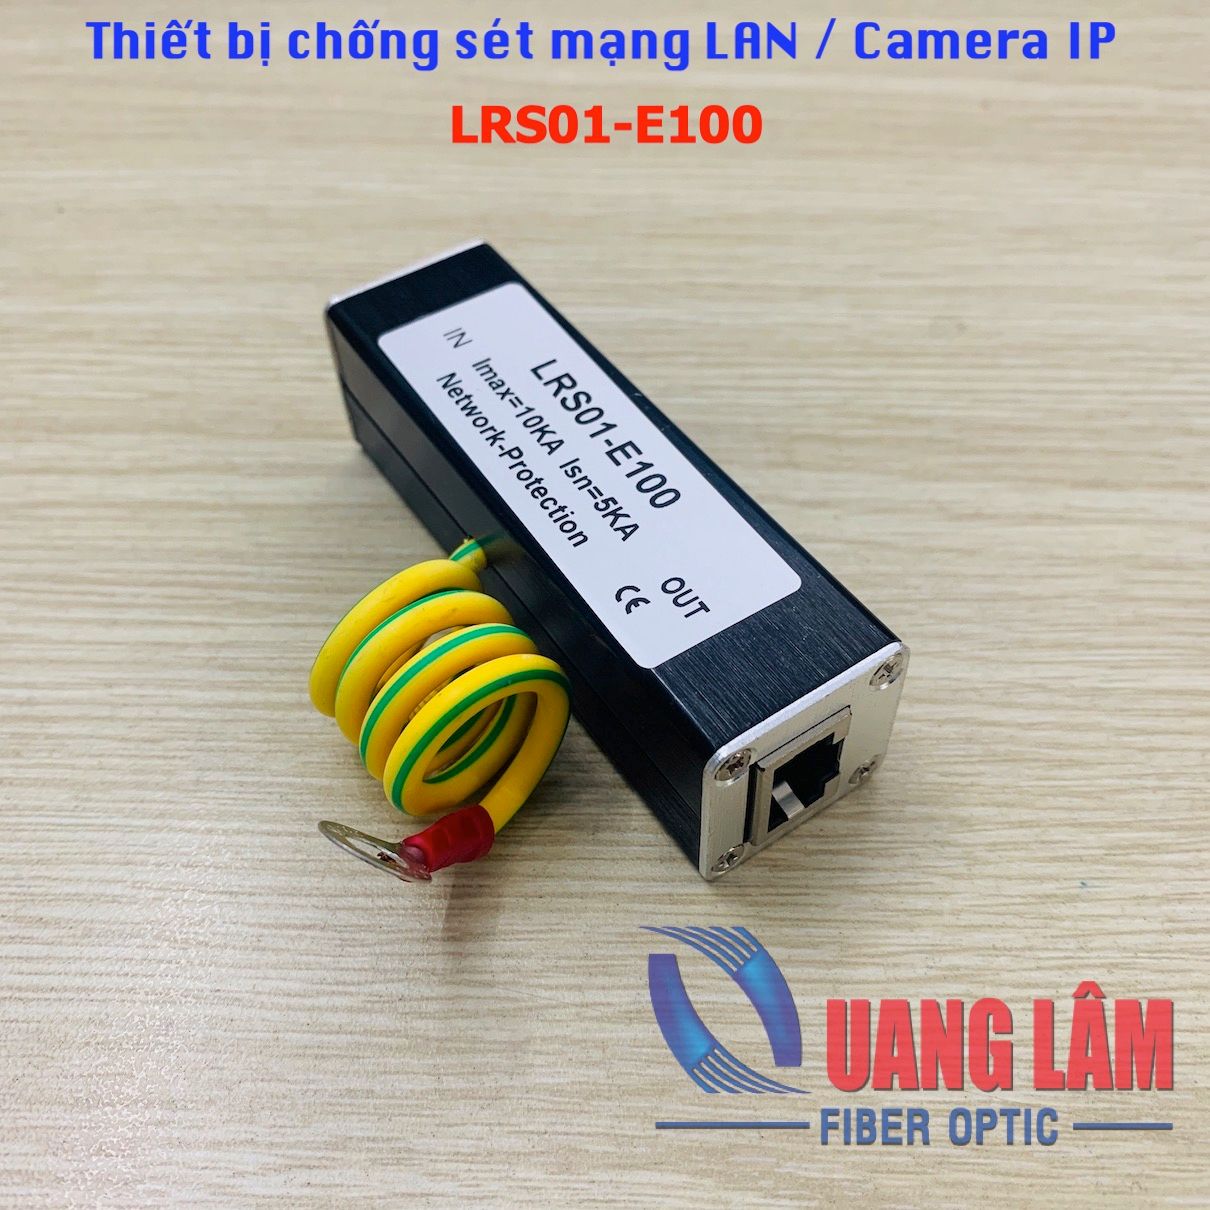 Thiết bị chống sét mạng LAN / Camera IP LRS01-E100